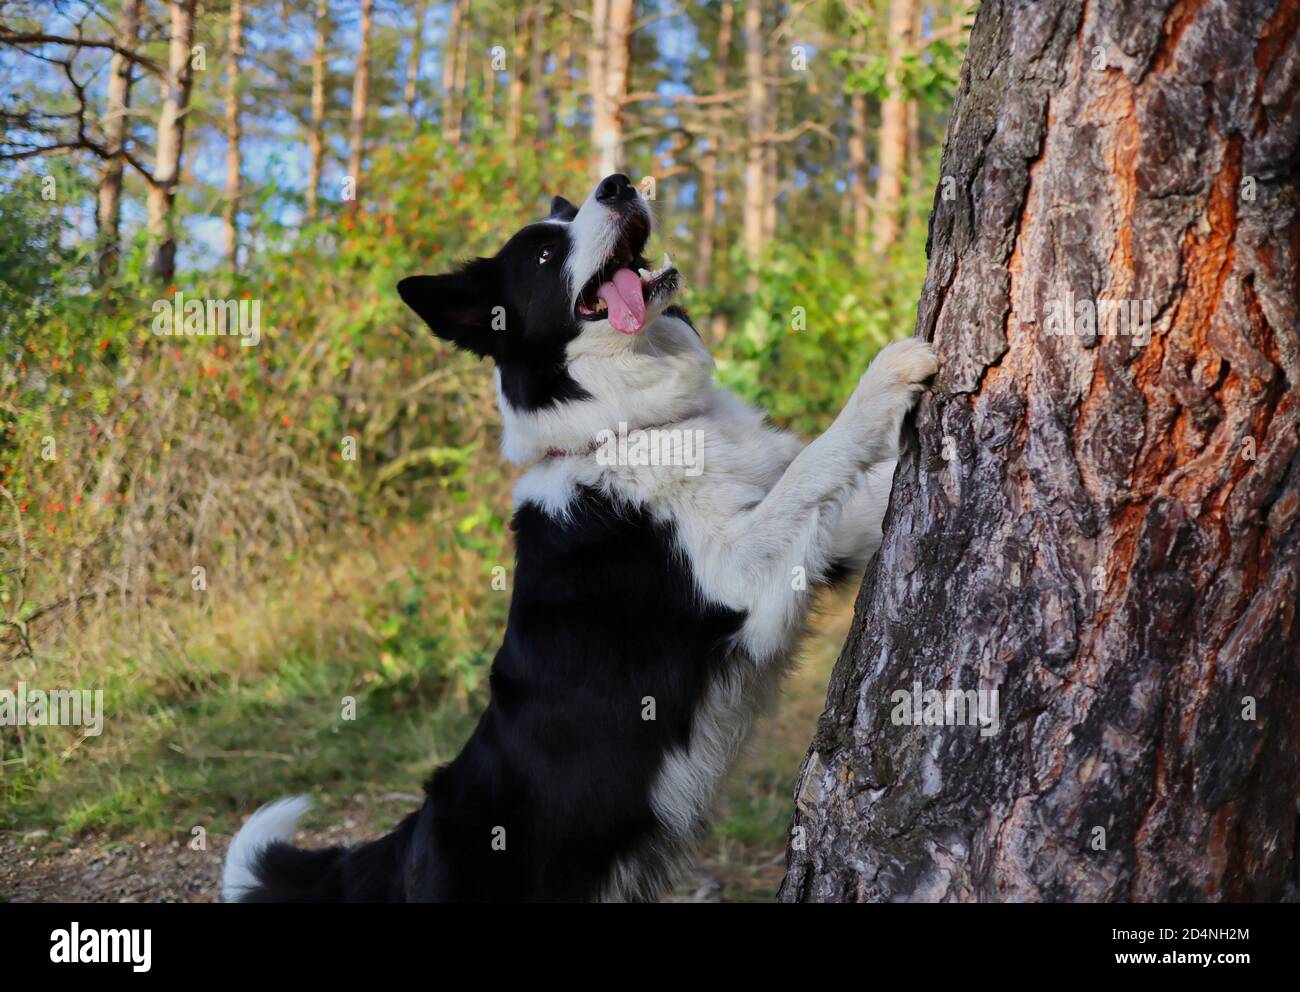 Liebenswert Border Collie mit Zunge aus springt mit seiner Pfote auf Baum Trunk während sonnigen Herbsttag. Niedlicher Schwarz-Weiß-Hund im Wald. Stockfoto